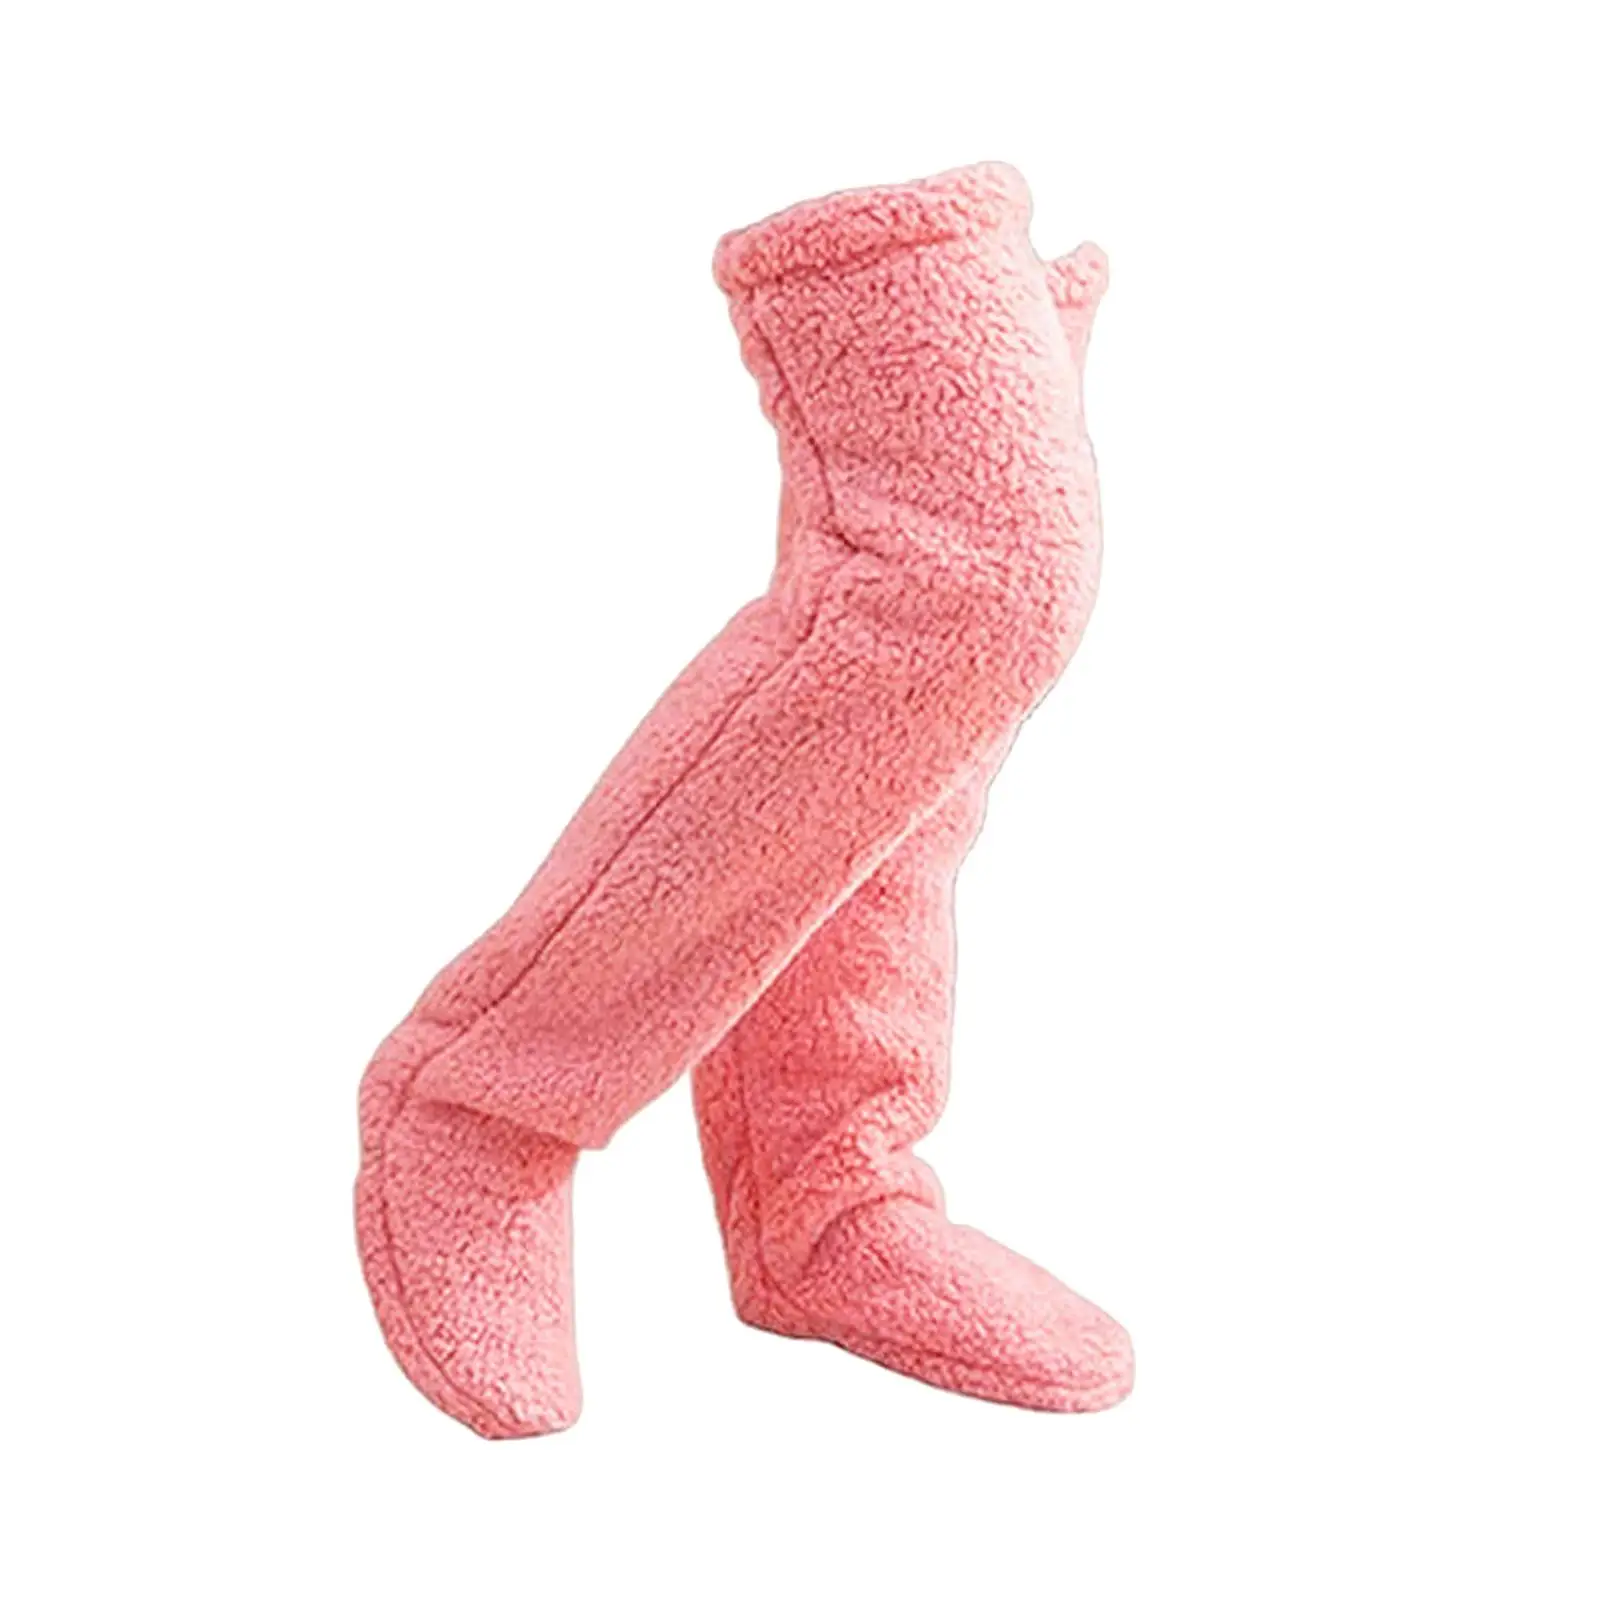 Plush Leg Warmers Soft Long Tube Knee Socks Thigh High Socks Slipper Stockings Over Knee Fuzzy Socks for Dorm Apartment Bedroom